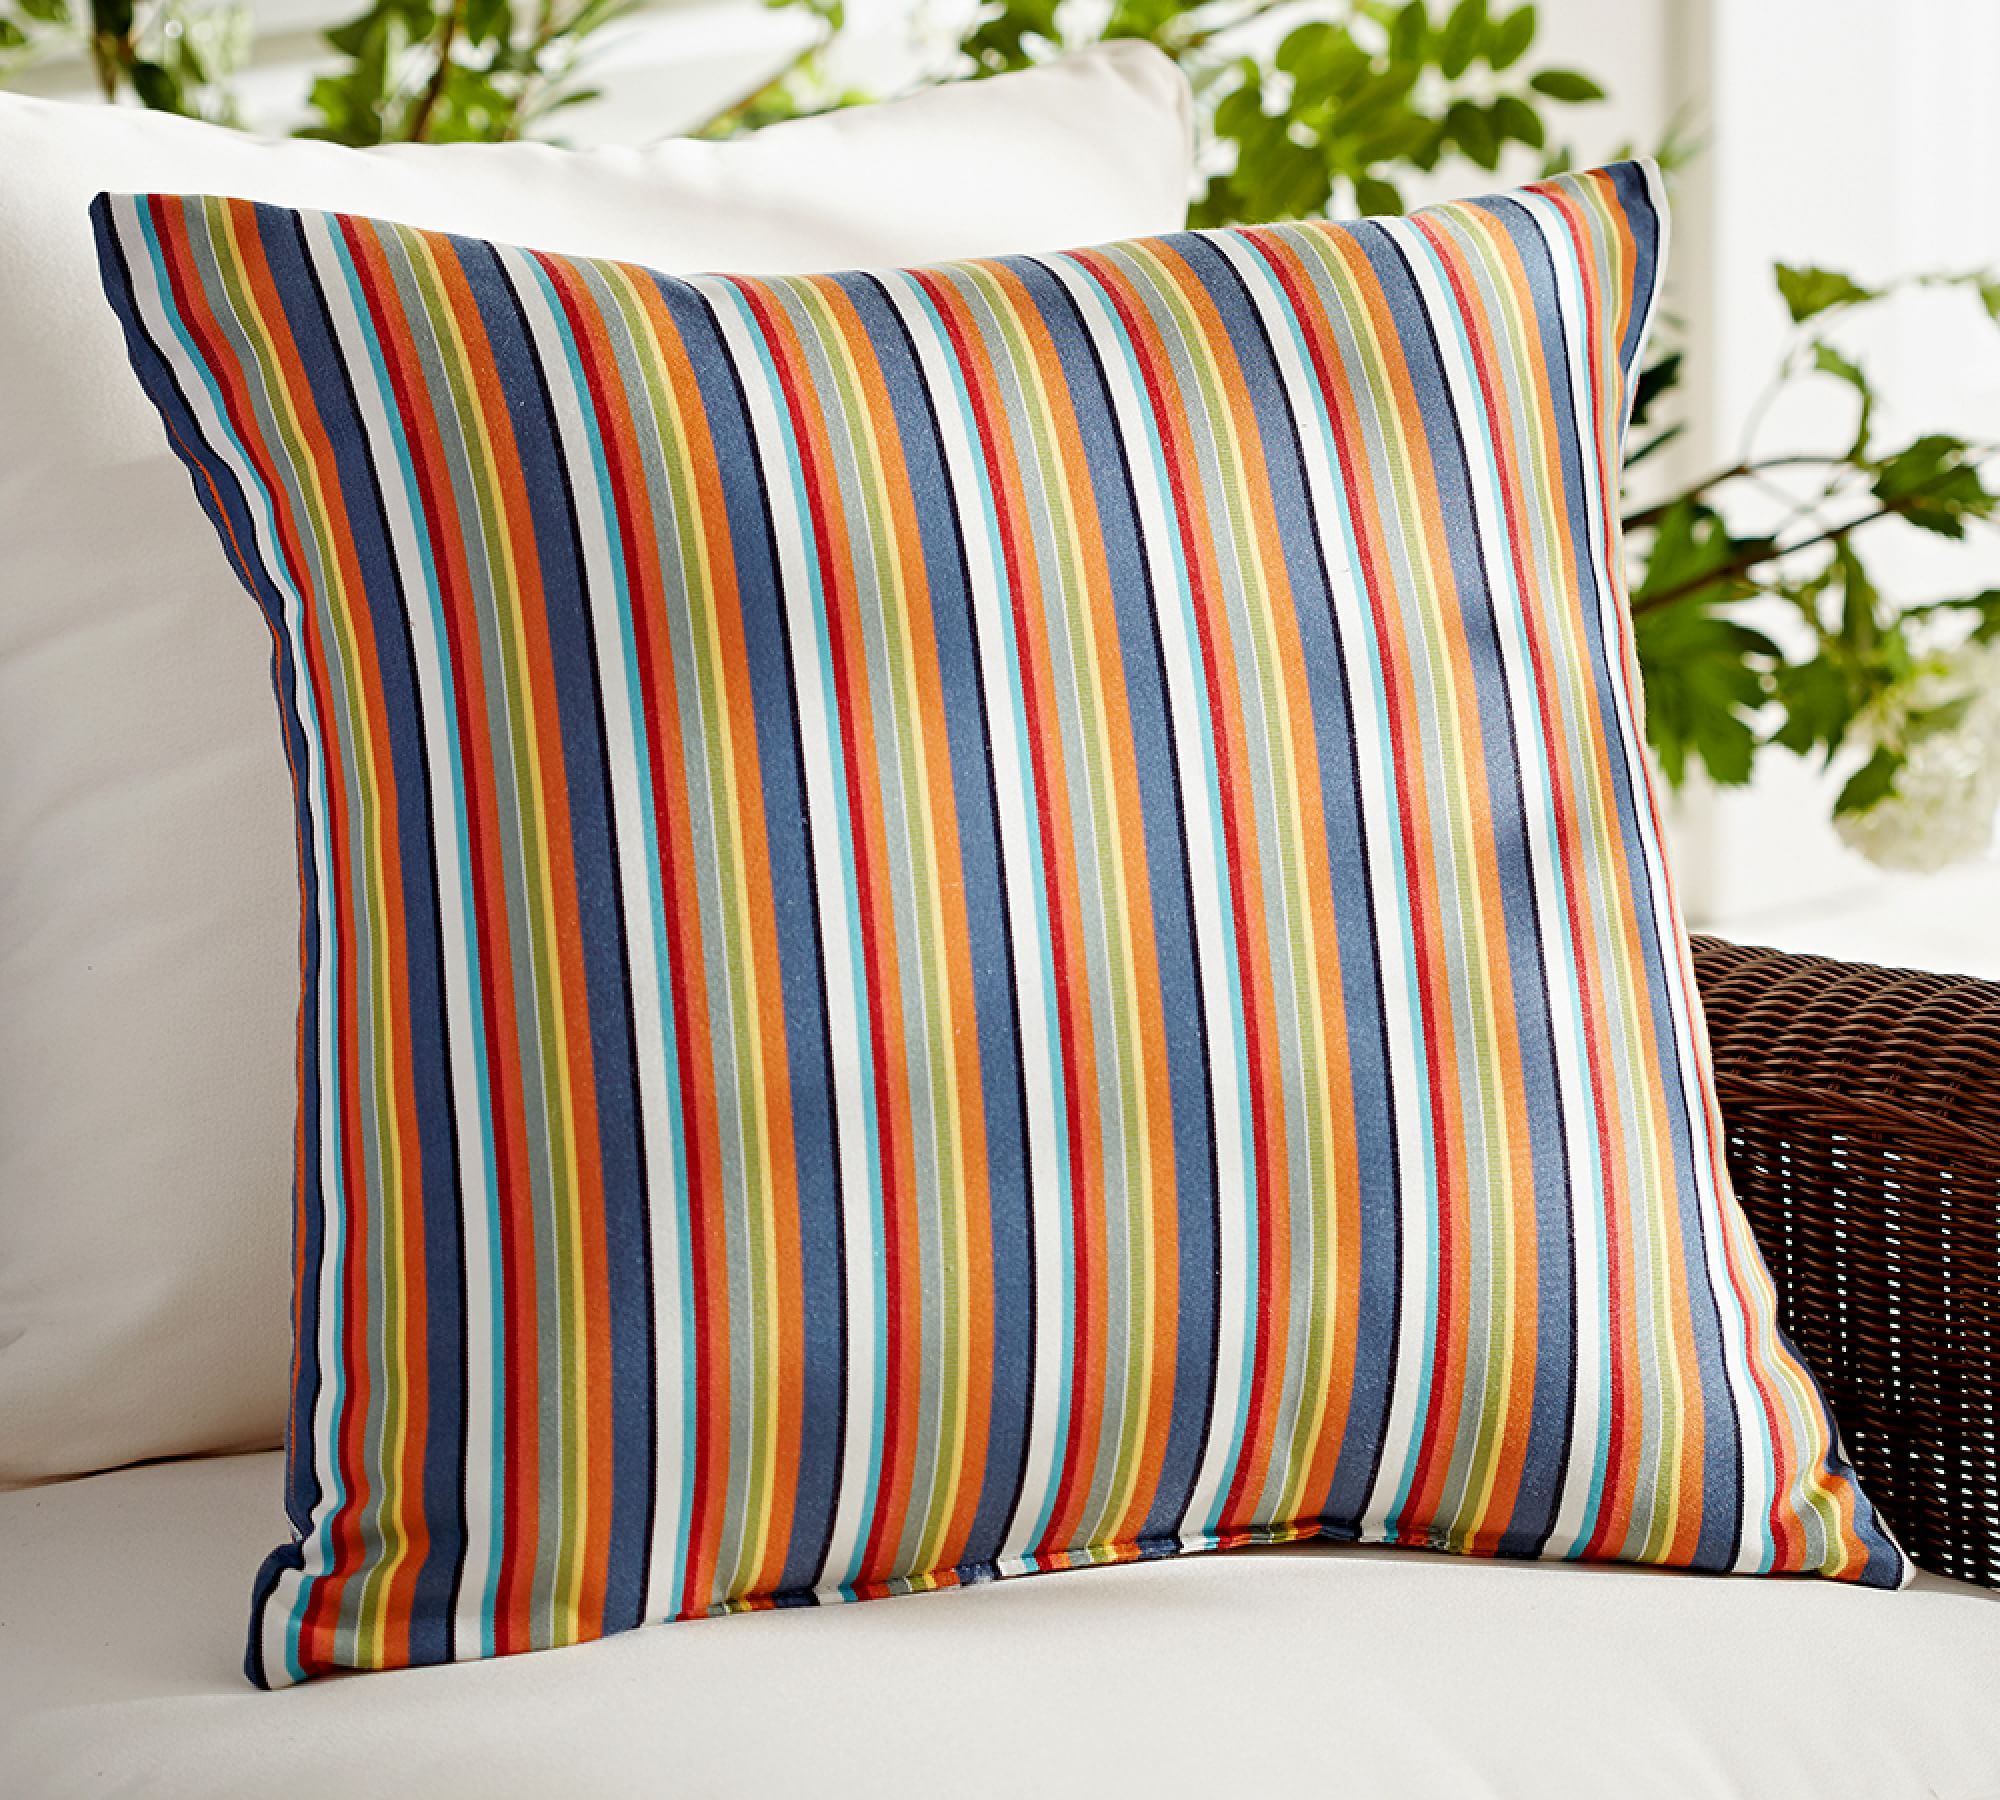 Sunbrella® Newport Striped Outdoor Pillow